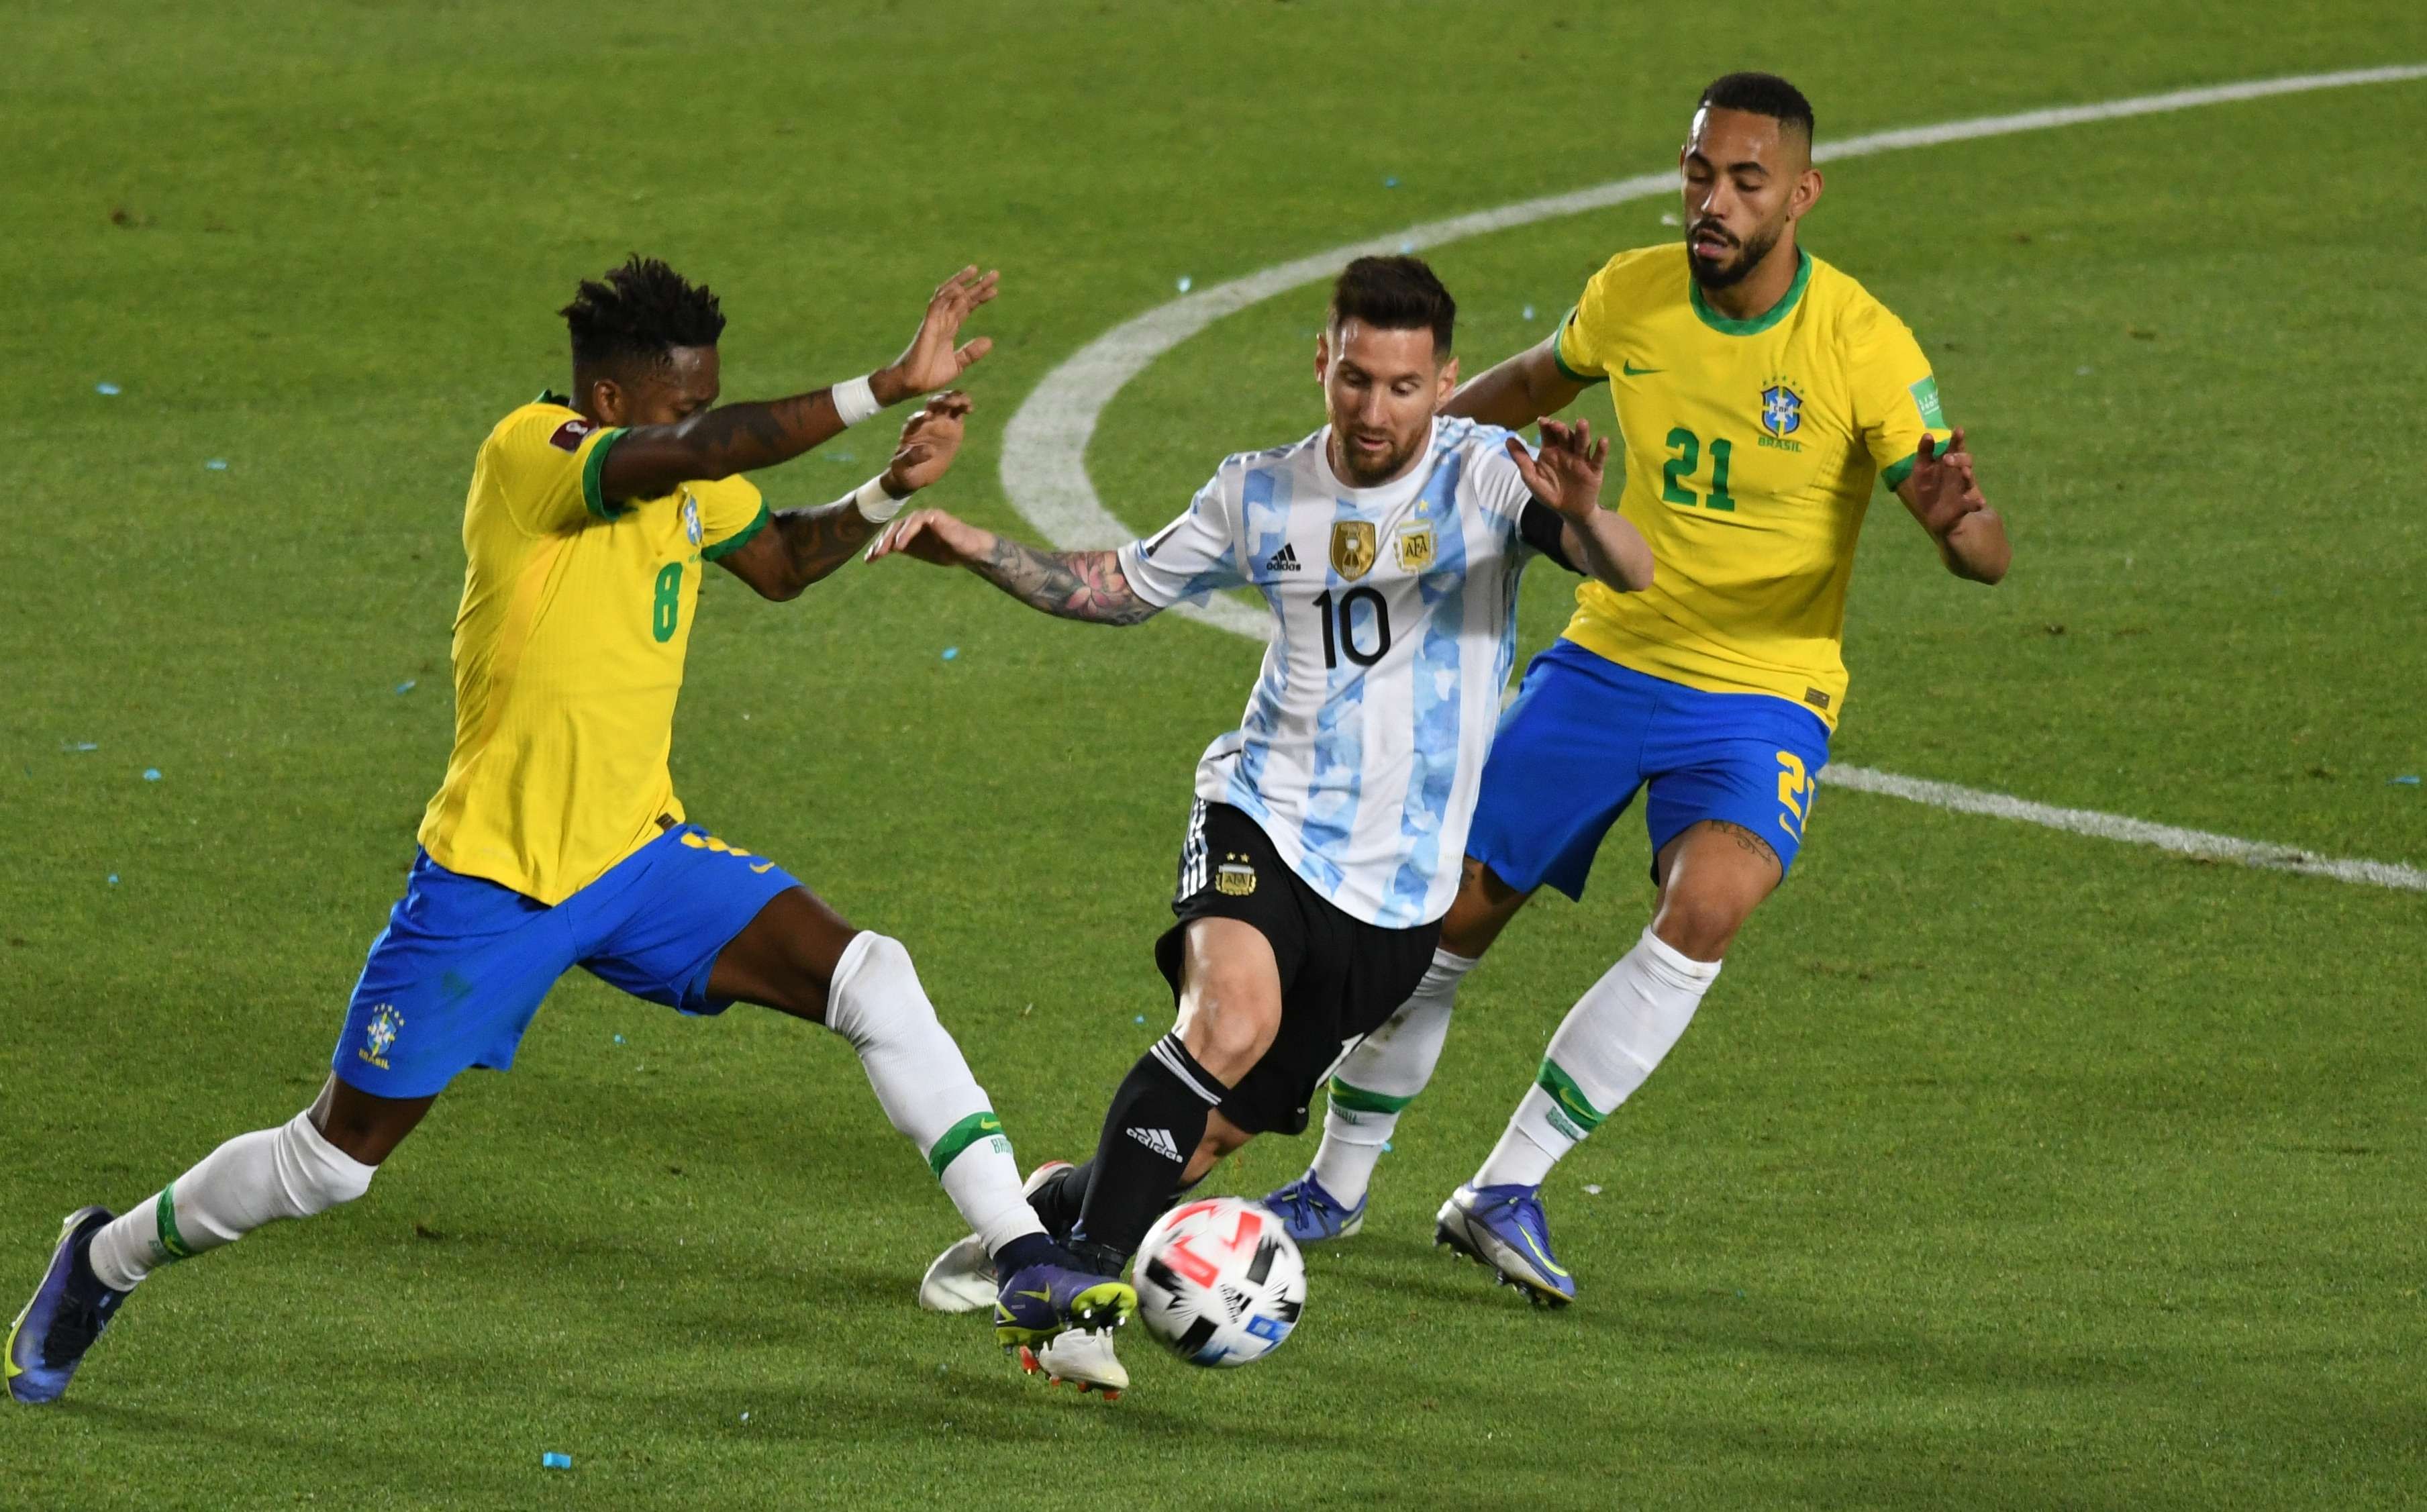 Lionel Messi diapit dua pemain Brasil saat laga Argentina kontra Brasil di Kualifikasi Piala Dunia 2022 zona CONMEBOL, Rabu 17 November 2021. (Foto: Twitter)